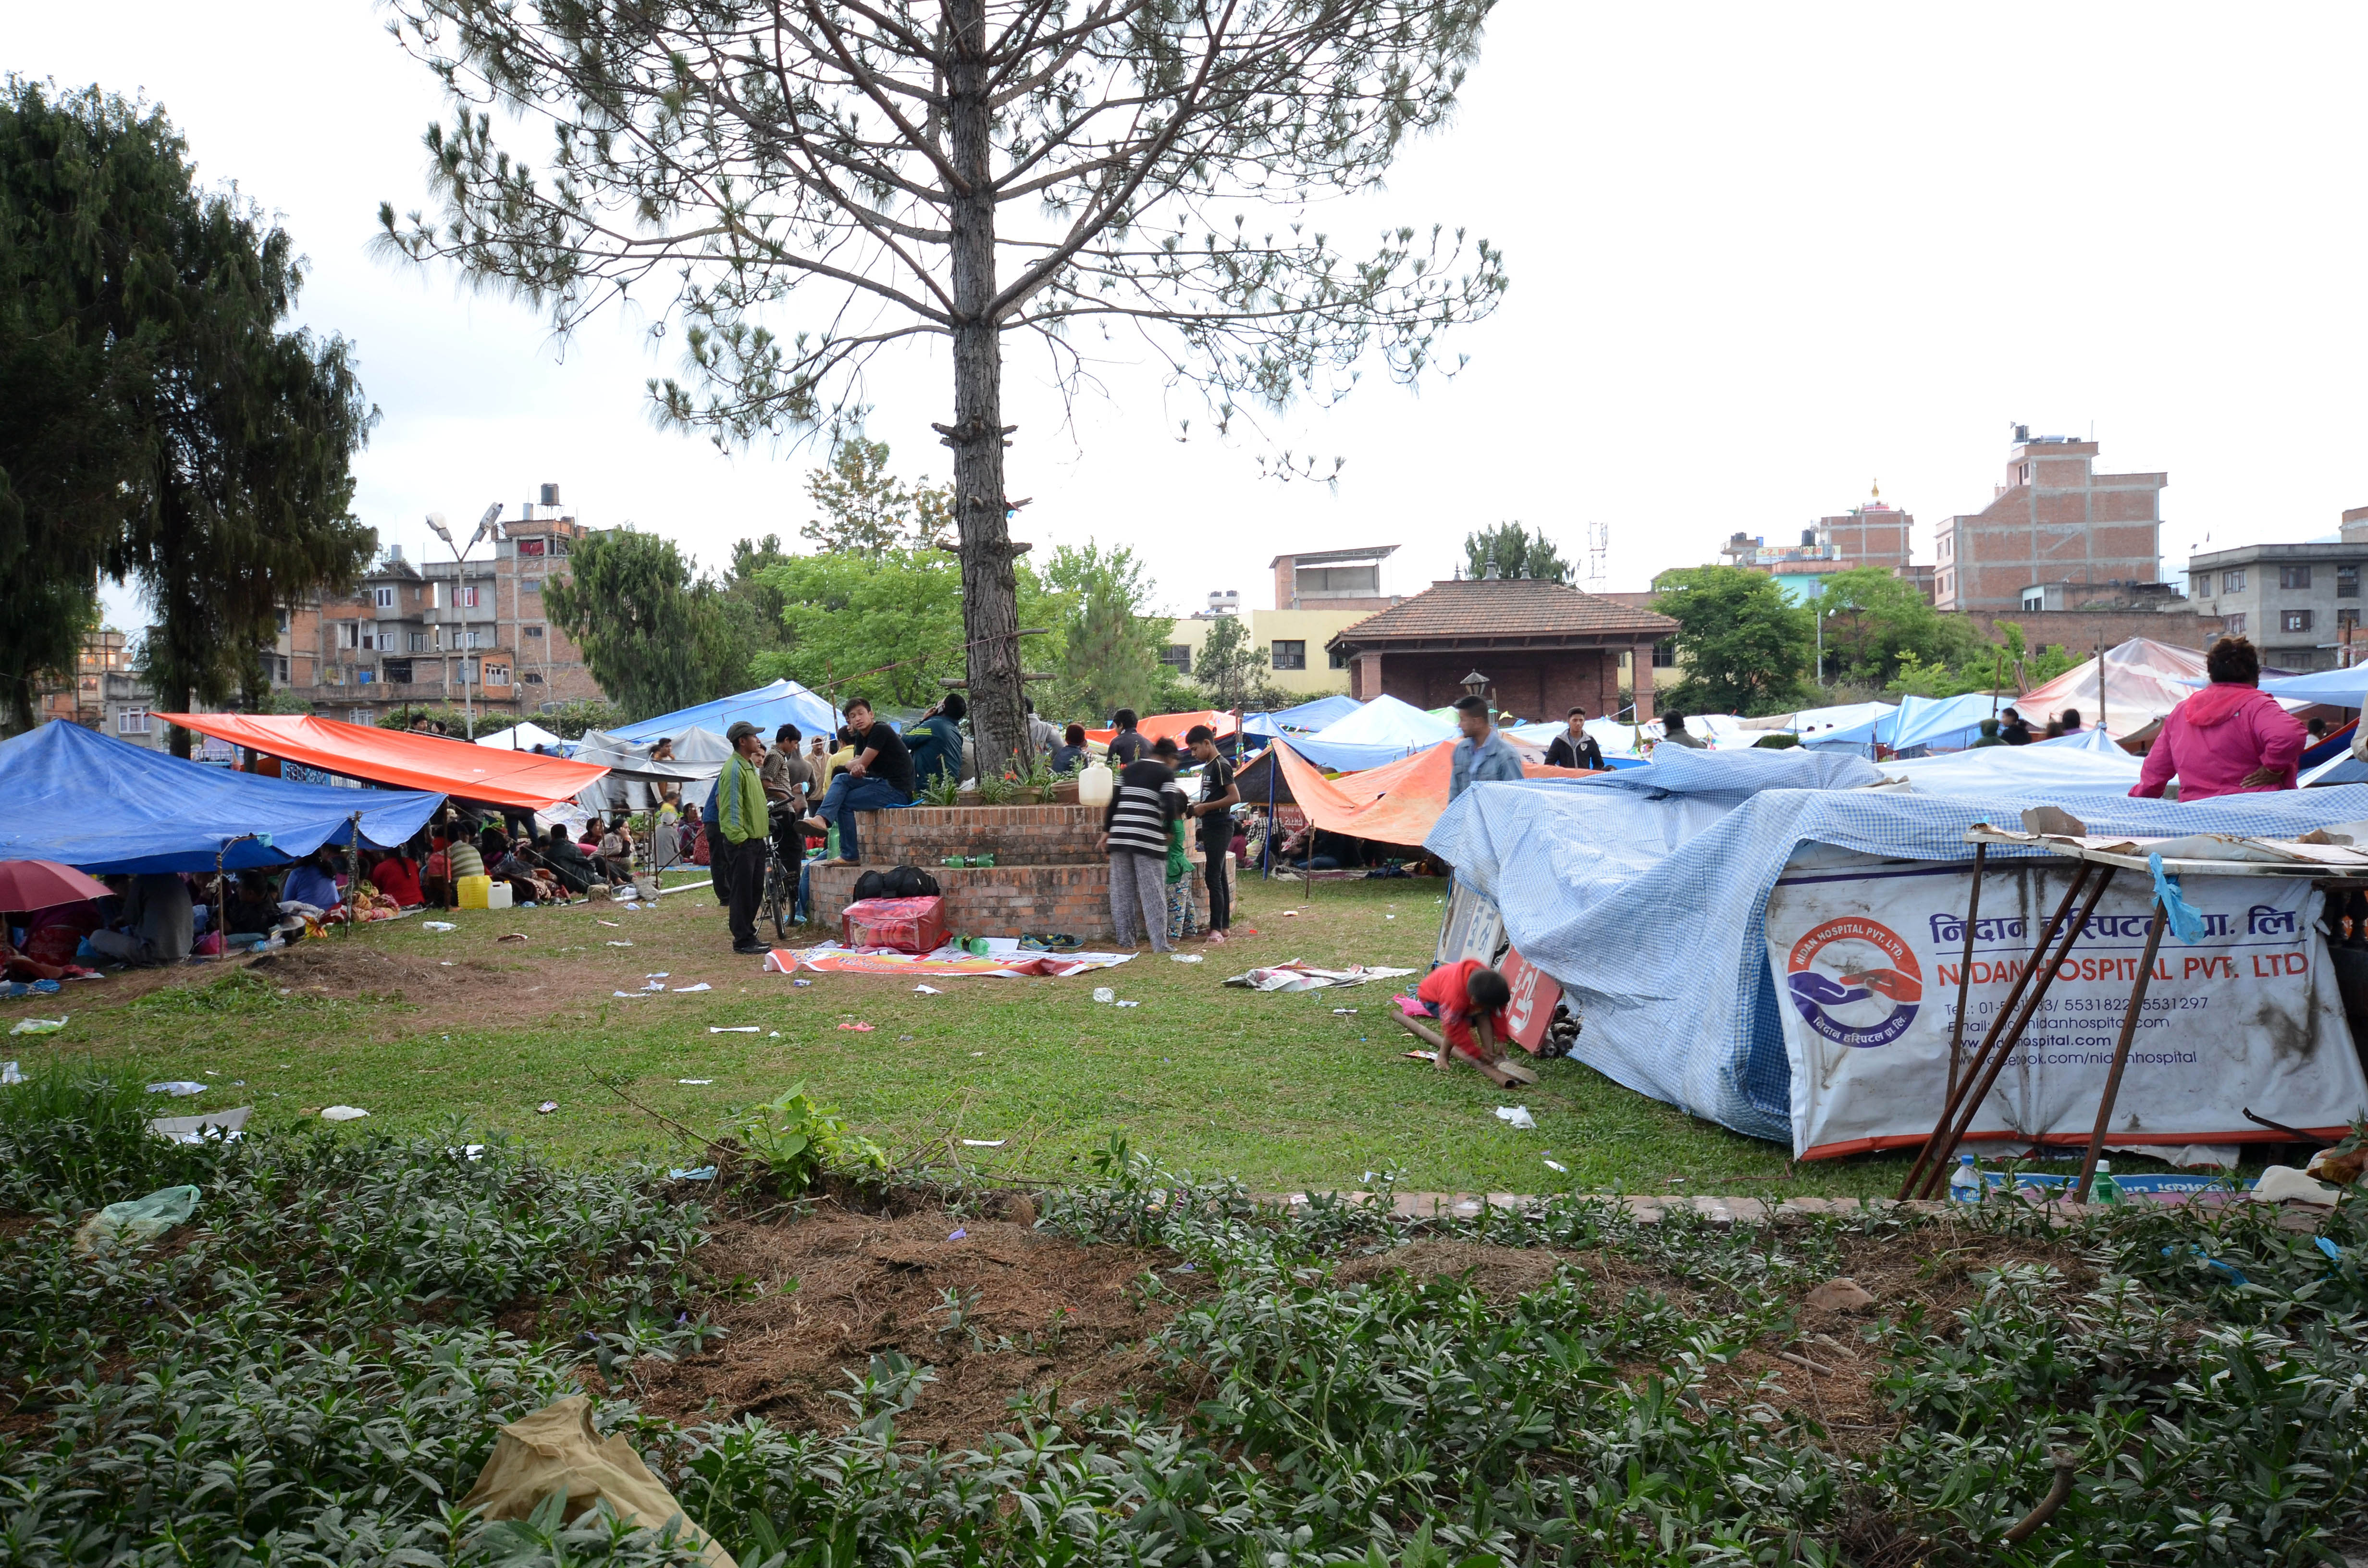 Hundratusentals nepaleser har förlorat sina hem i jordbävningen. Förutom tält behöver de vatten